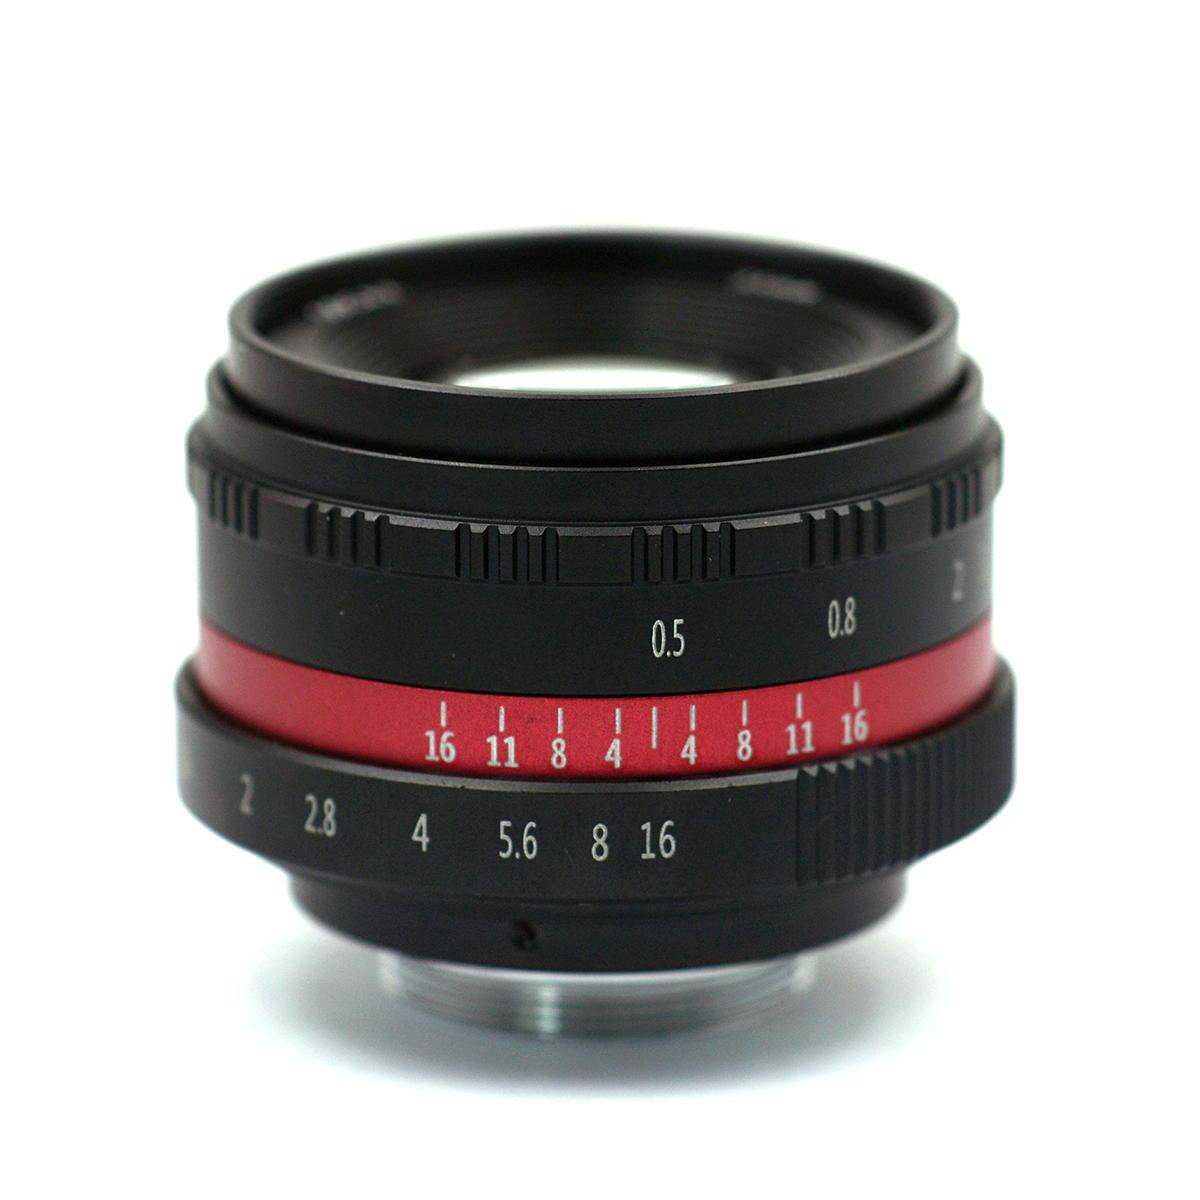 微单镜头35mm F1.6 厂家直销 定焦相机镜头C口- 黑色红圈版 CH013D